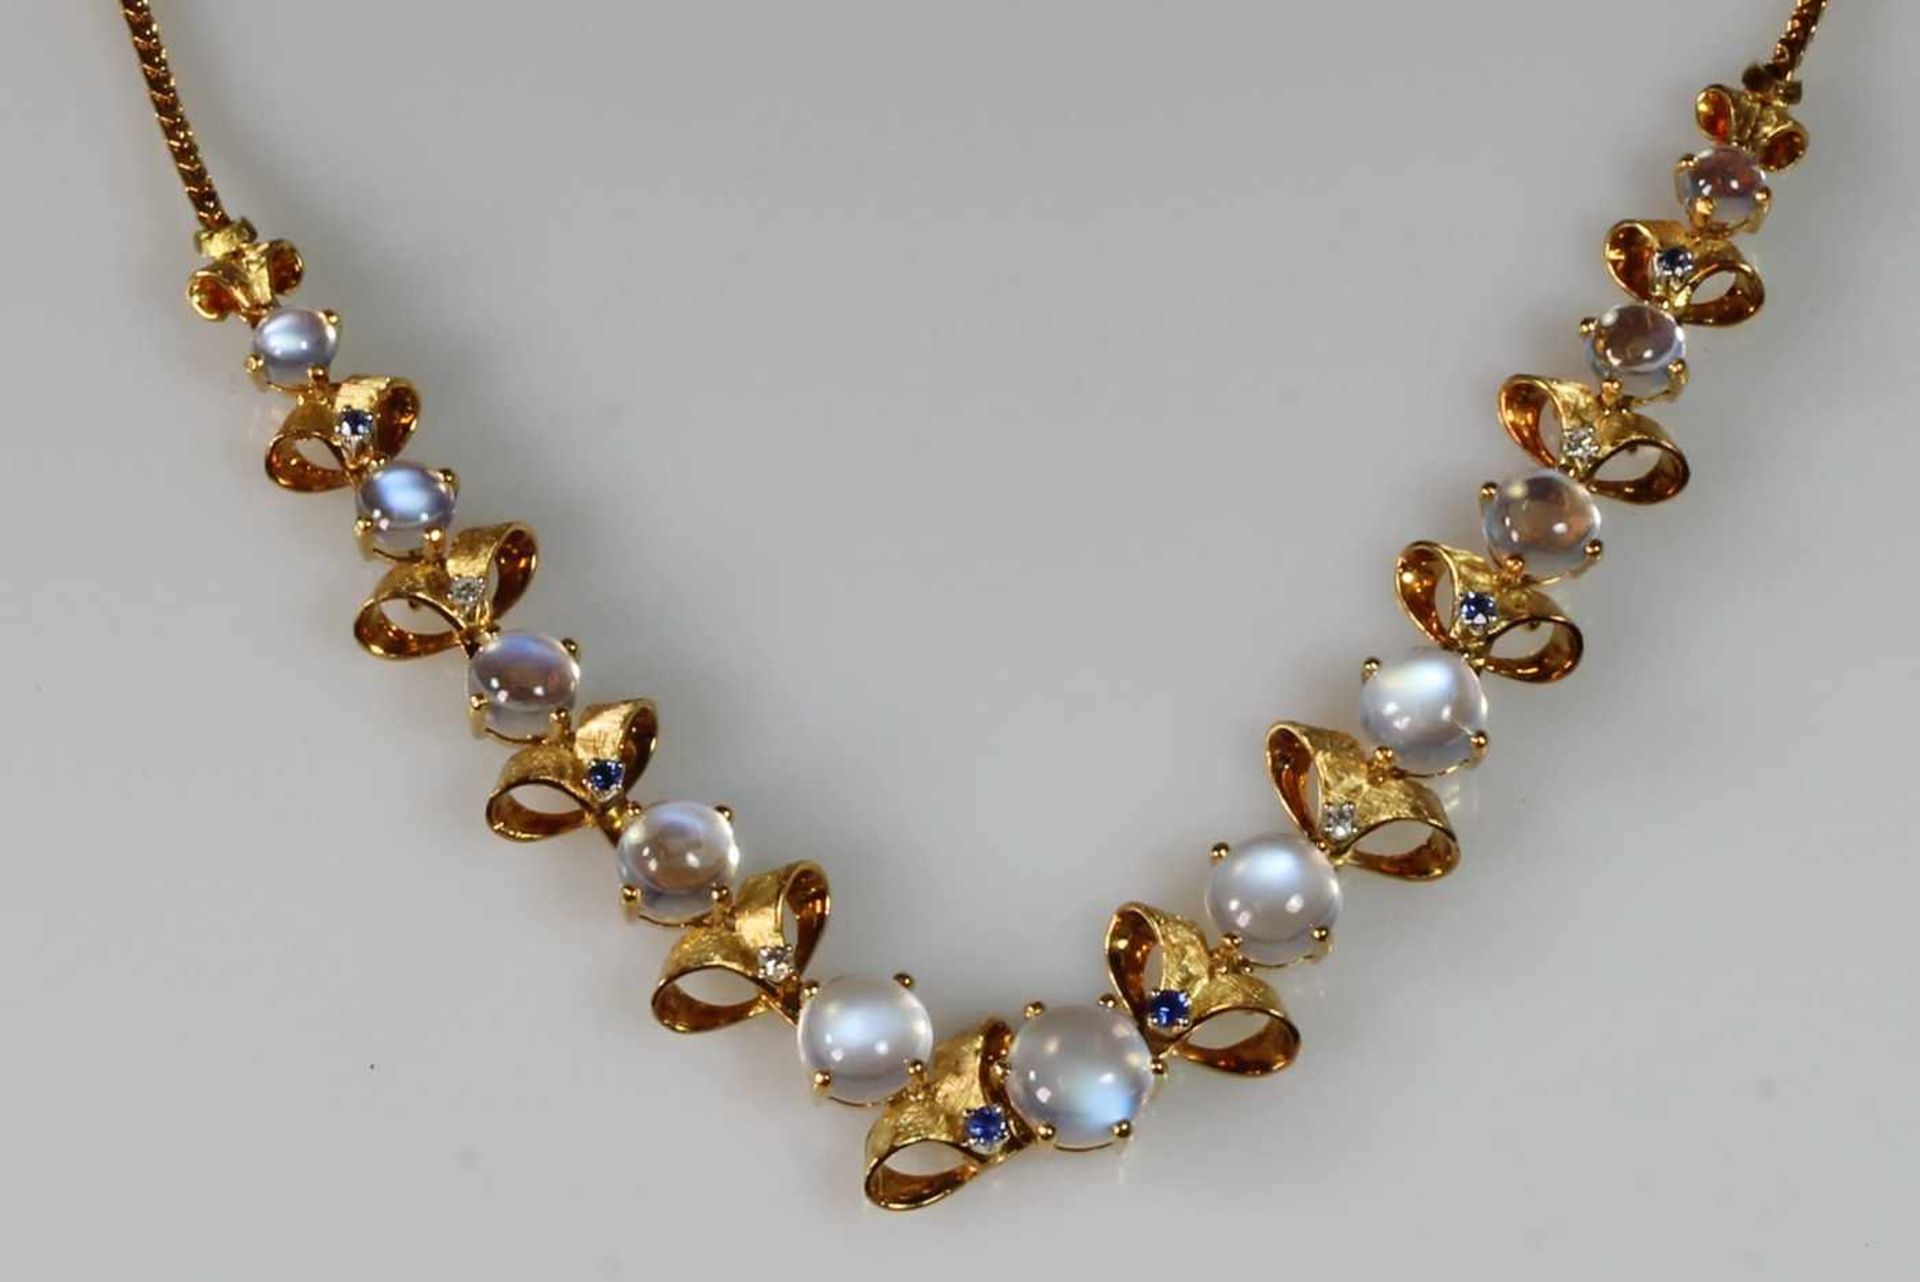 Halskette, GG 750, 11 runde Mondstein-Cabochons ø 4.7 - 8.4 mm, 6 runde facettierte Saphire, 4 - Bild 3 aus 3